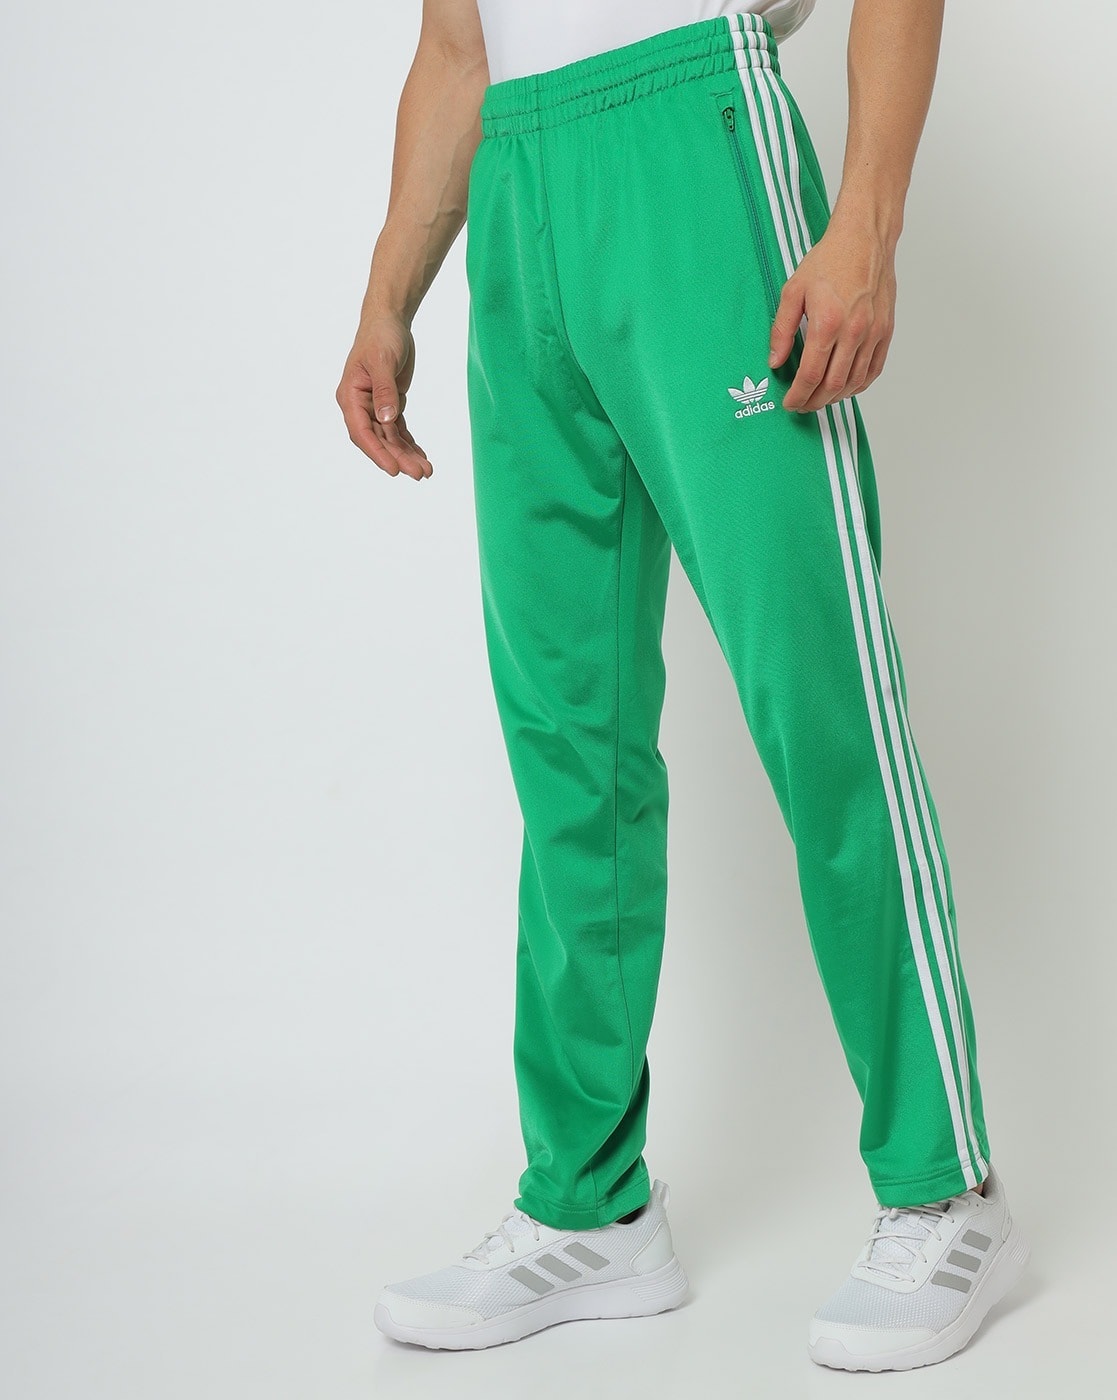 Buy Green Track for Men by Adidas Originals | Ajio.com